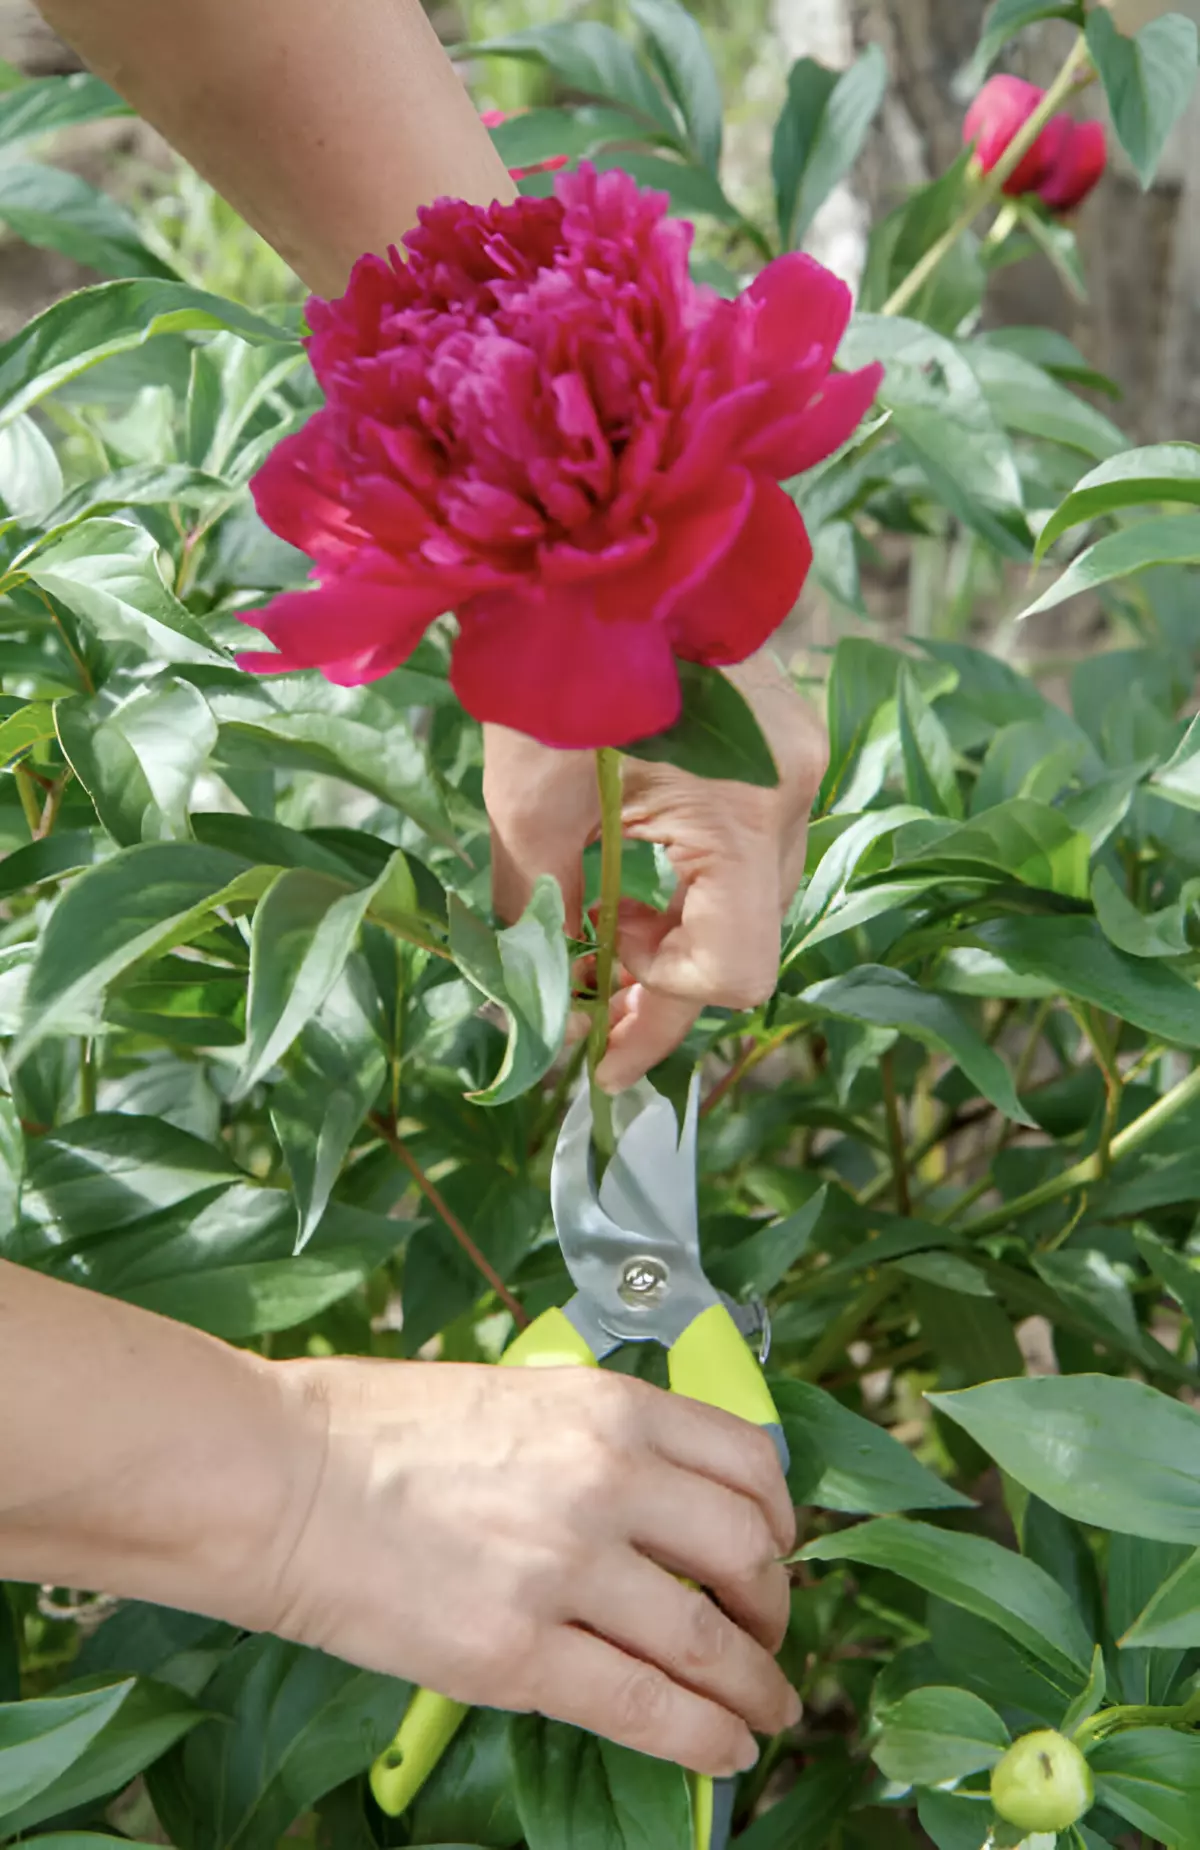 deux mains coupent avec un secateur une fleur rouge de pivoine arbustive